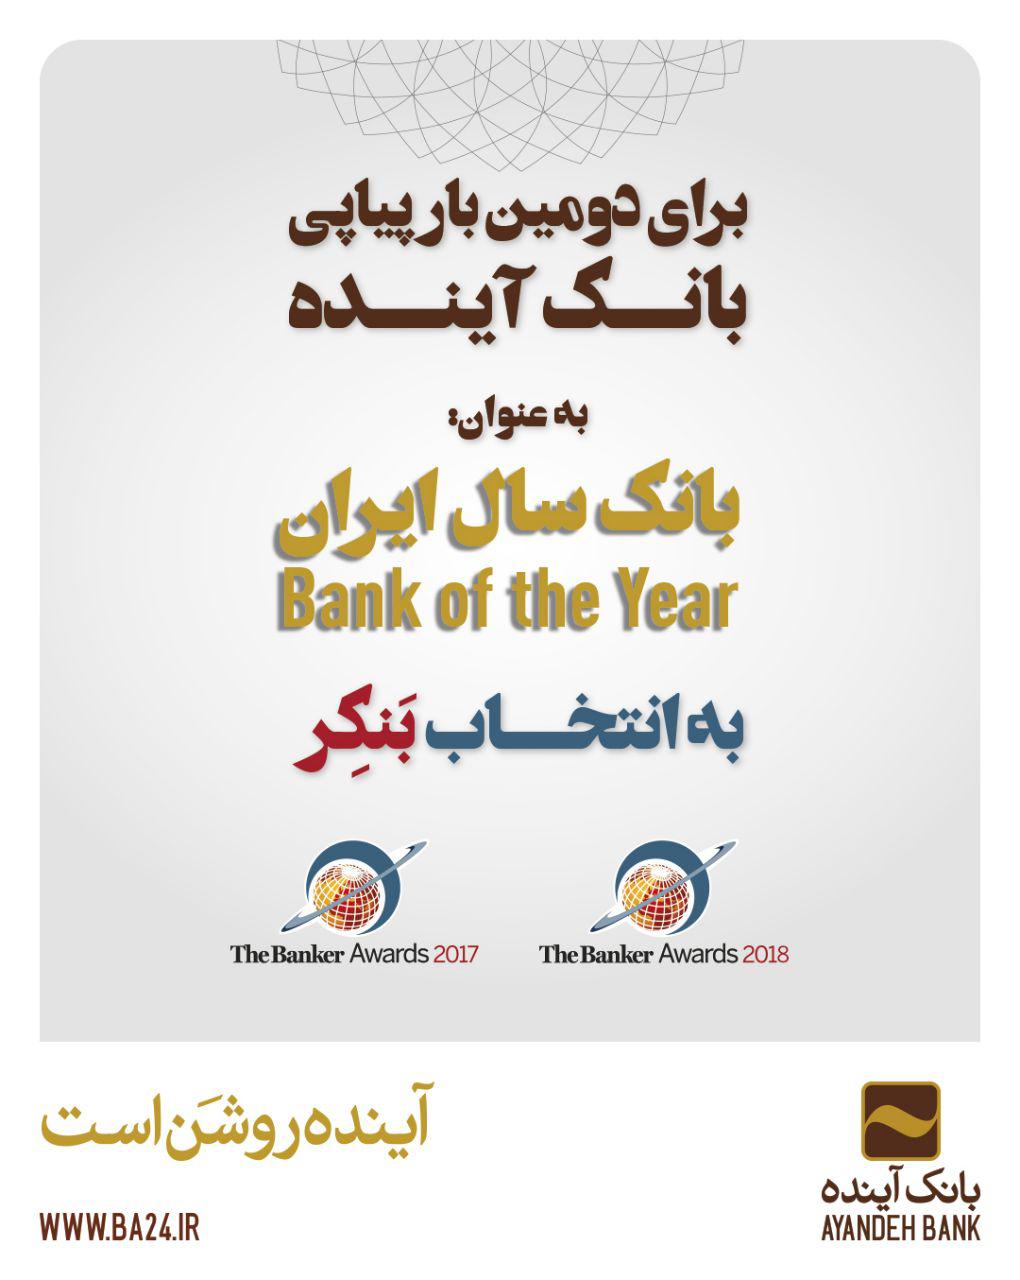 بانک آینده، بانک سال ایران در سال ۲۰۱۸ میلادی